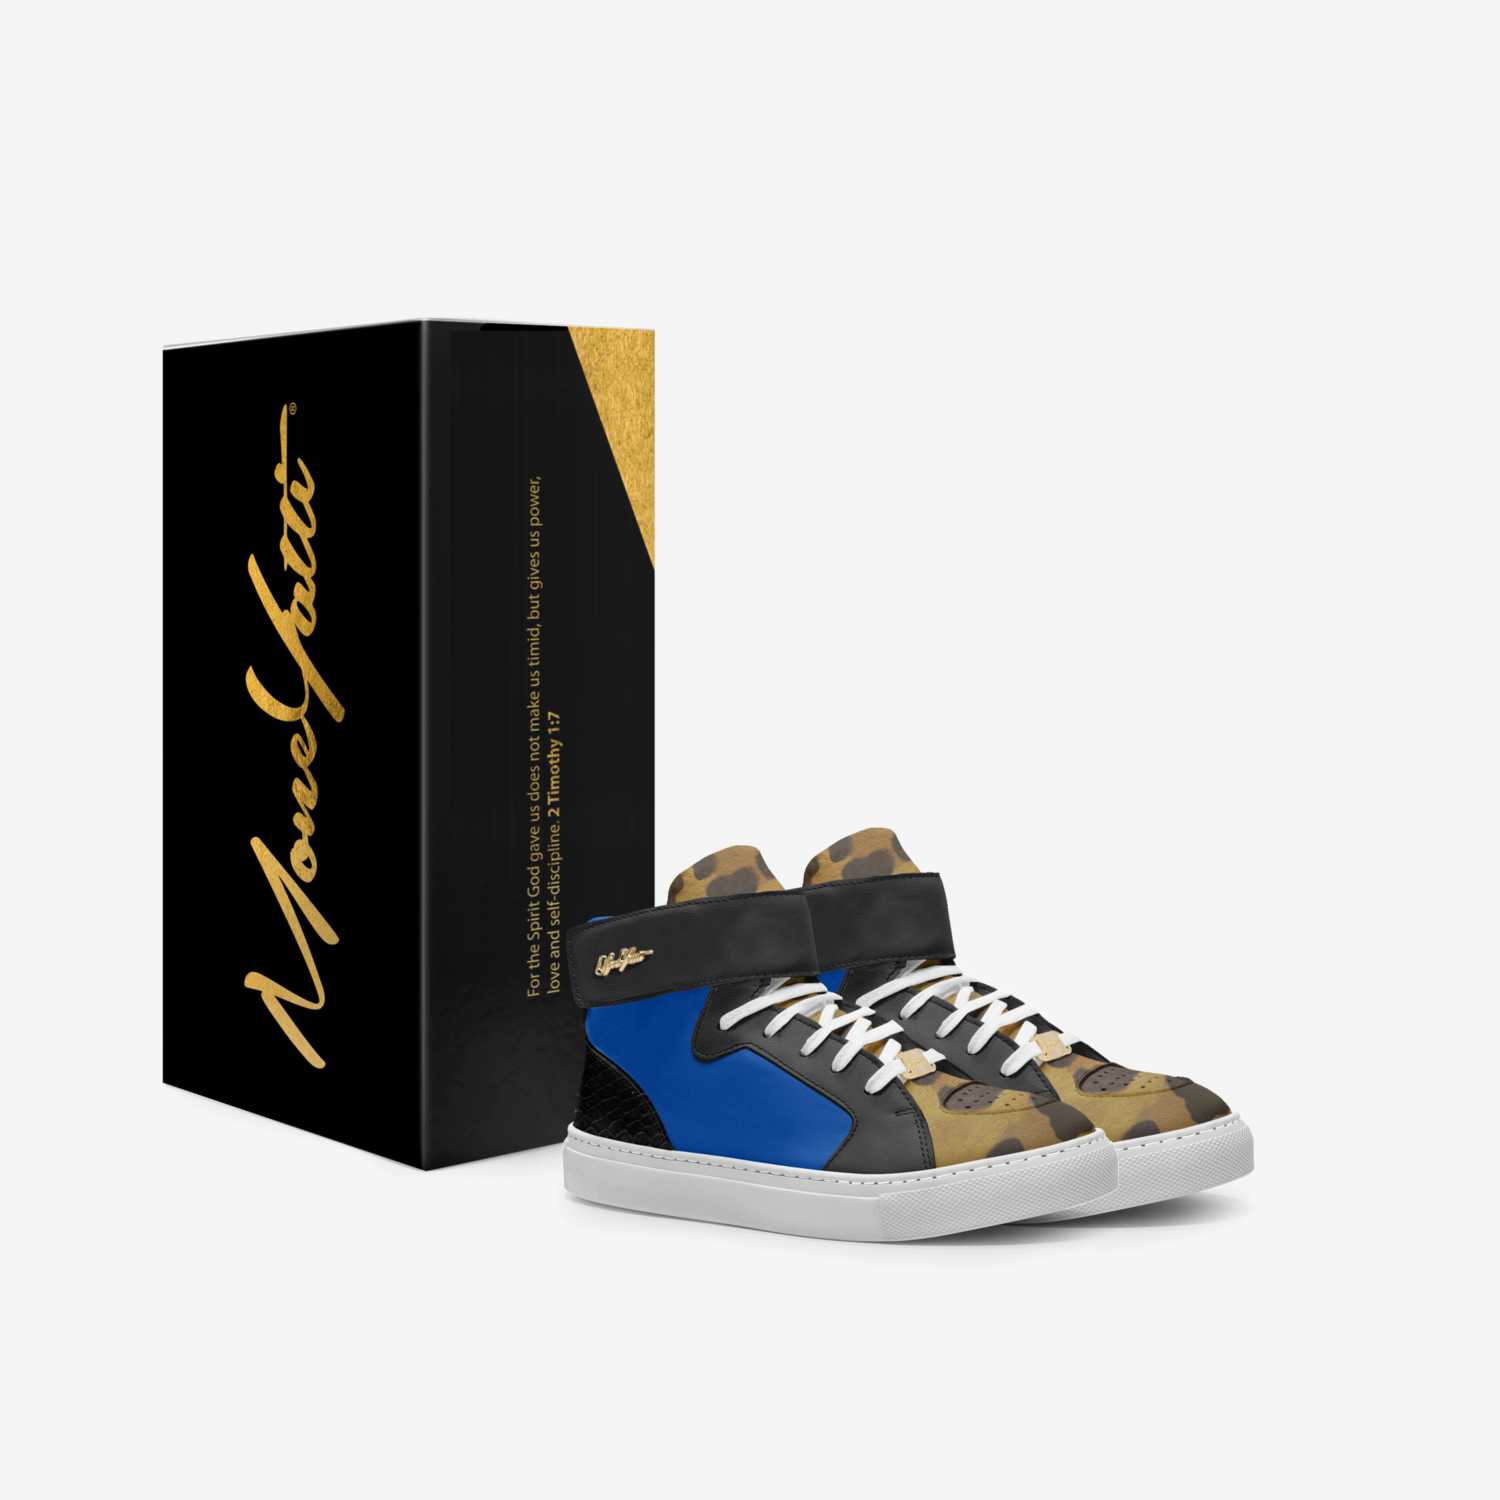 MONEYATTI KIDH02 custom made in Italy shoes by Moneyatti Brand | Box view